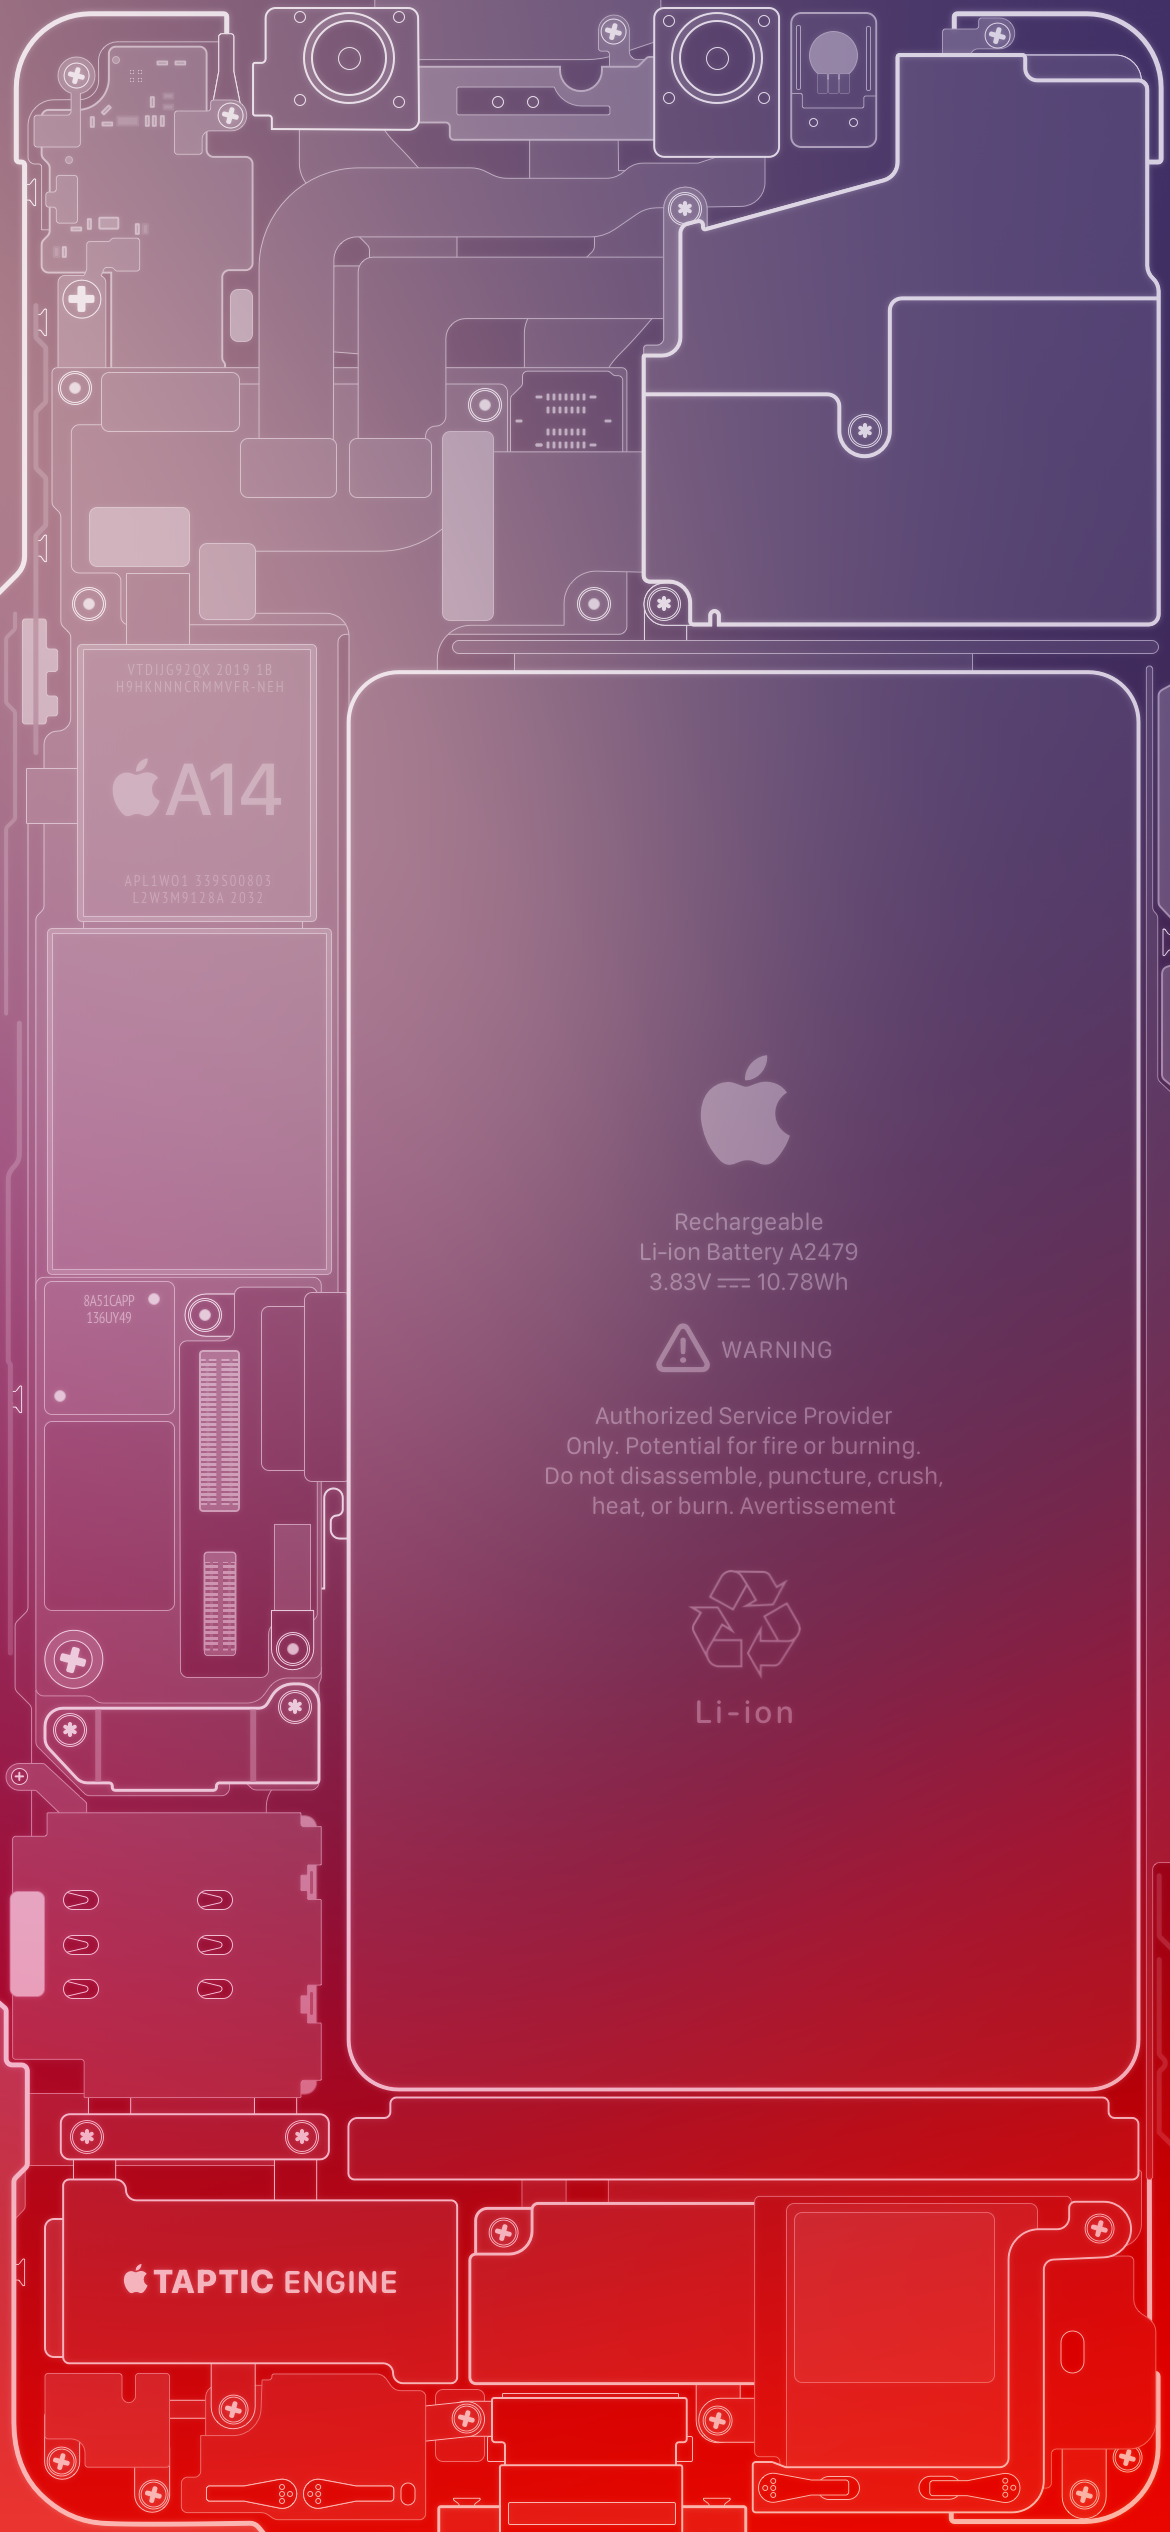 Muôn vàn lựa chọn về hình nền phối cảnh iPhone 12, 12 Pro và 12 Pro Max đang chờ đón bạn tại Basic Apple Guy. Được thiết kế đẹp mắt, tinh tế và đậm chất Apple, những hình nền này sẽ chắc chắn làm lòng fan hâm mộ mê đắm.